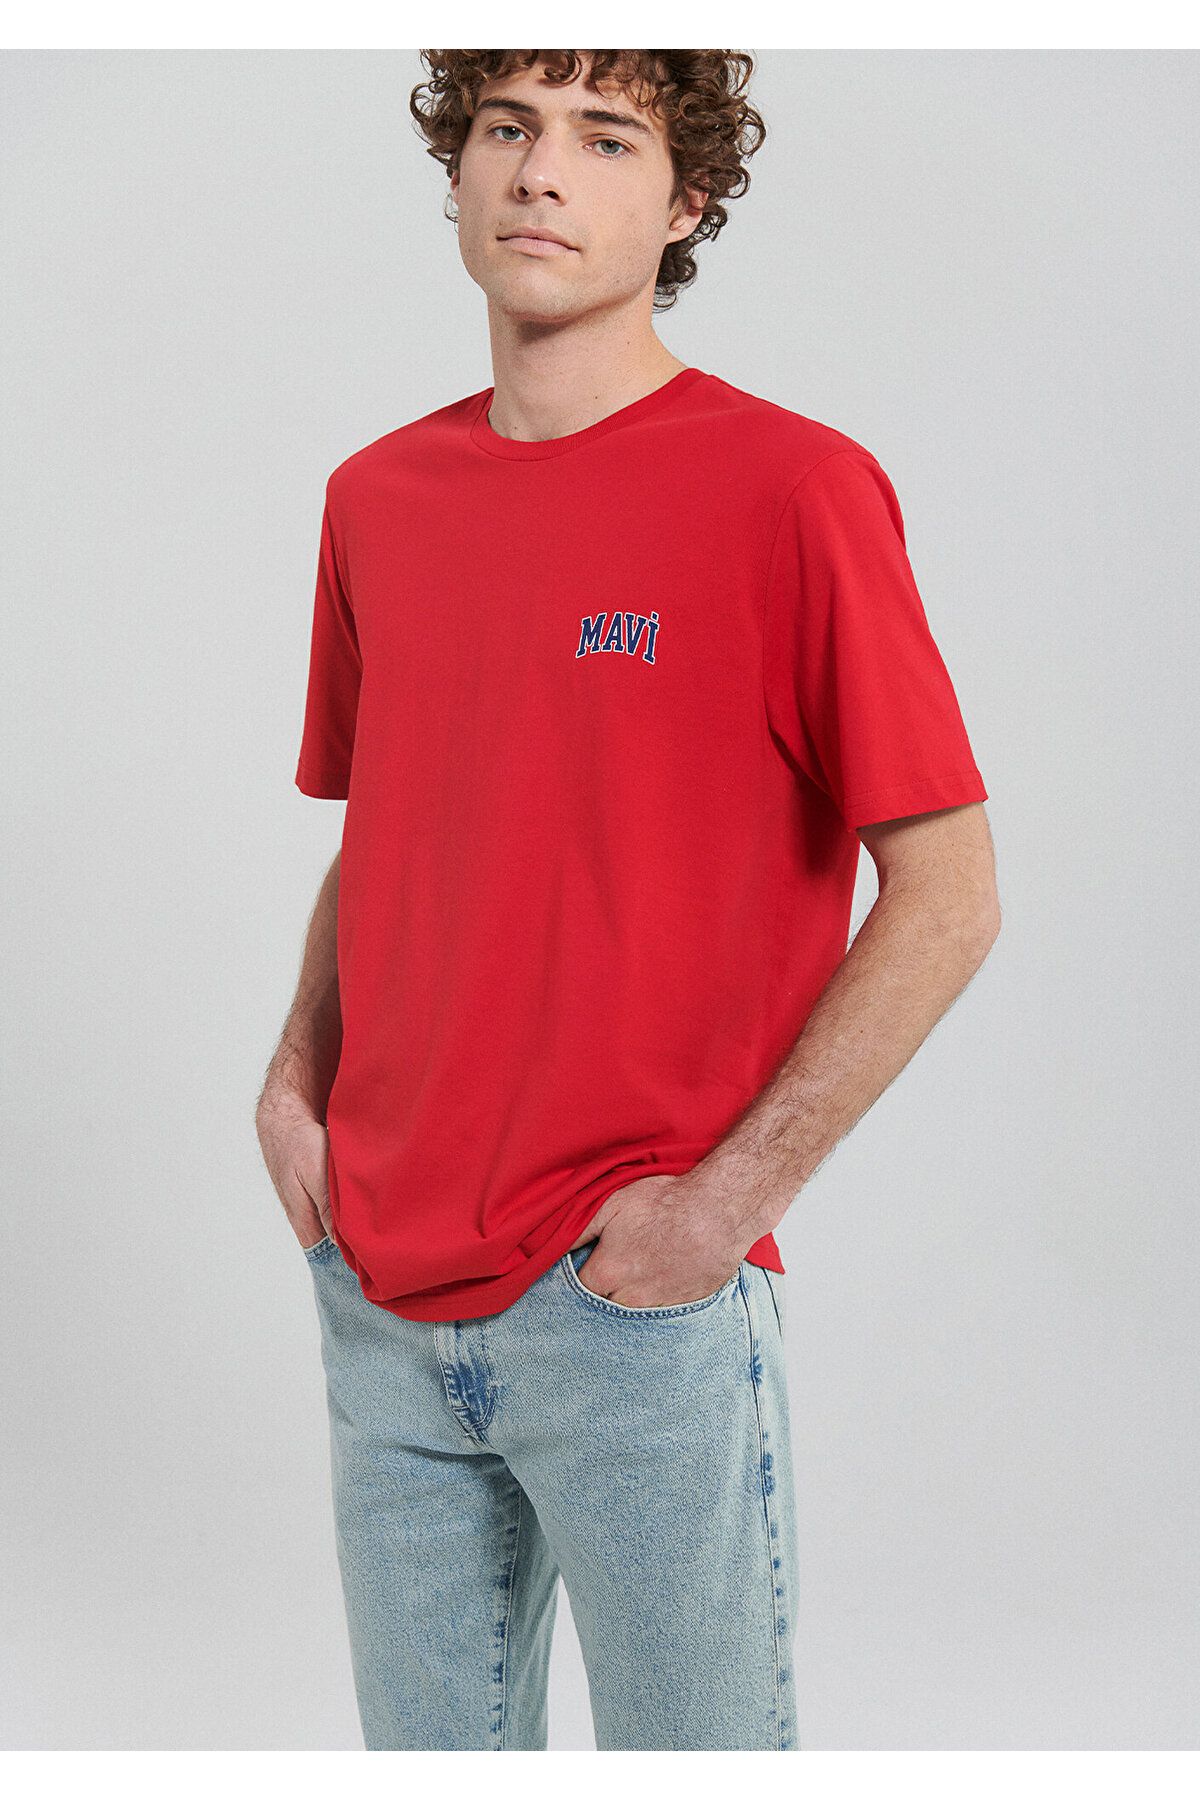 Mavi Logo Baskılı Kırmızı Tişört Regular Fit / Normal Kesim 0611714-82054